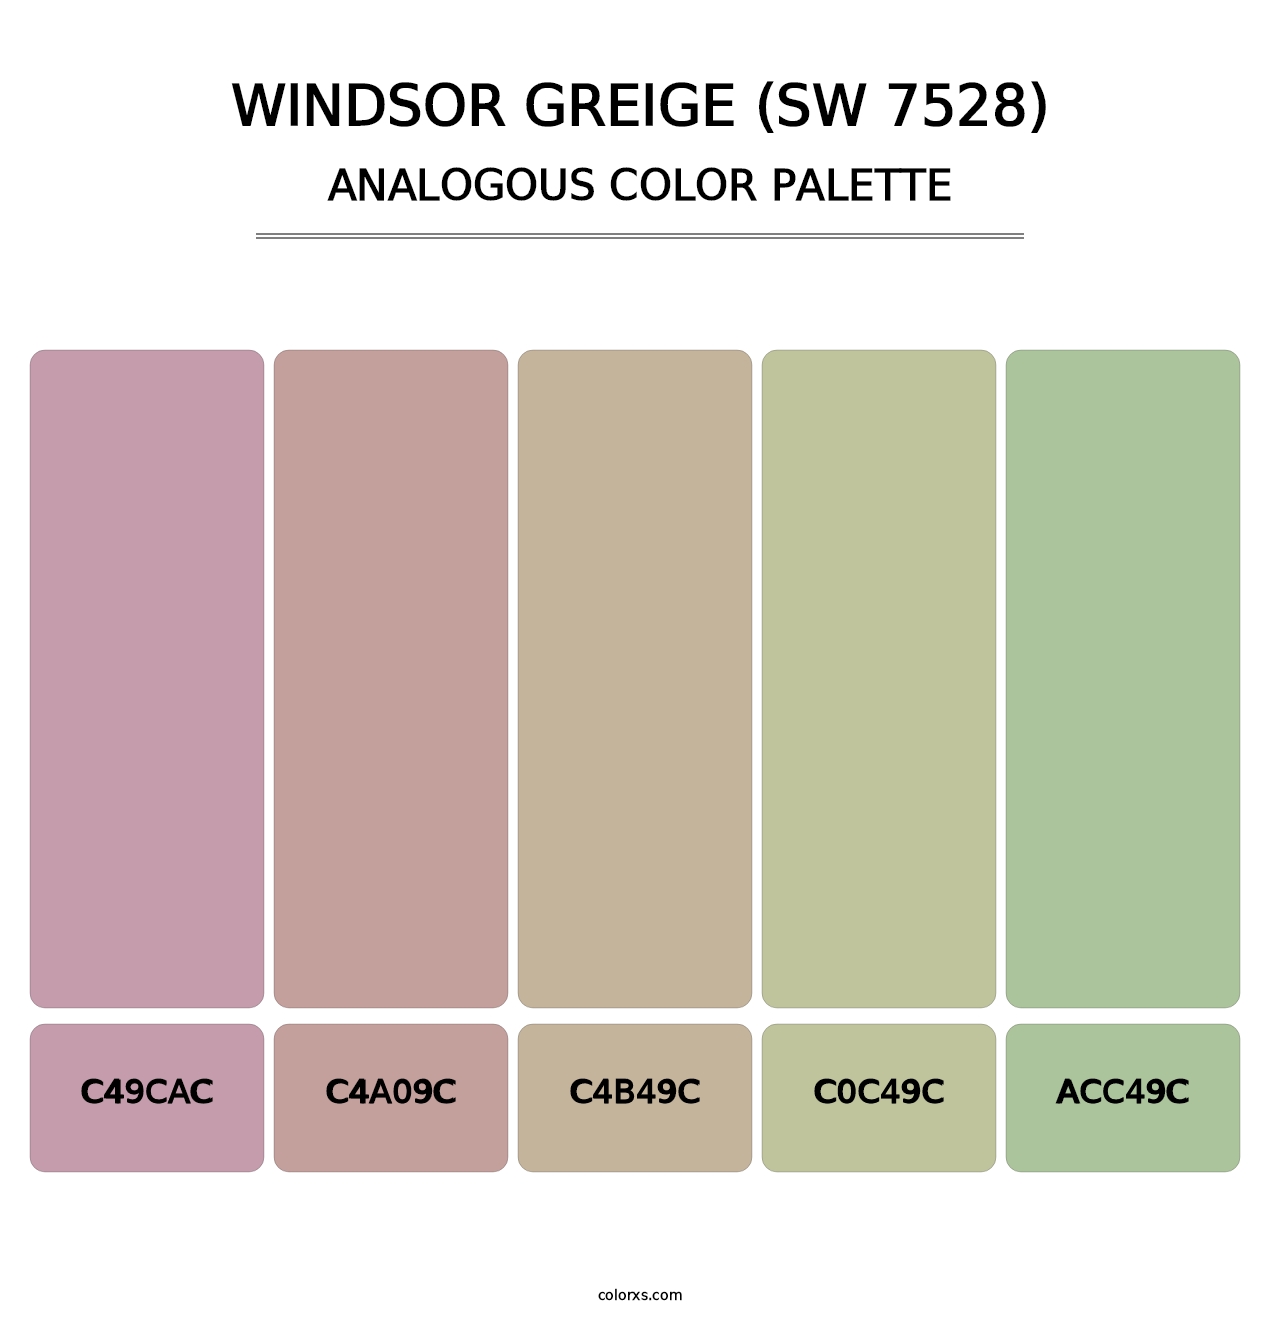 Windsor Greige (SW 7528) - Analogous Color Palette